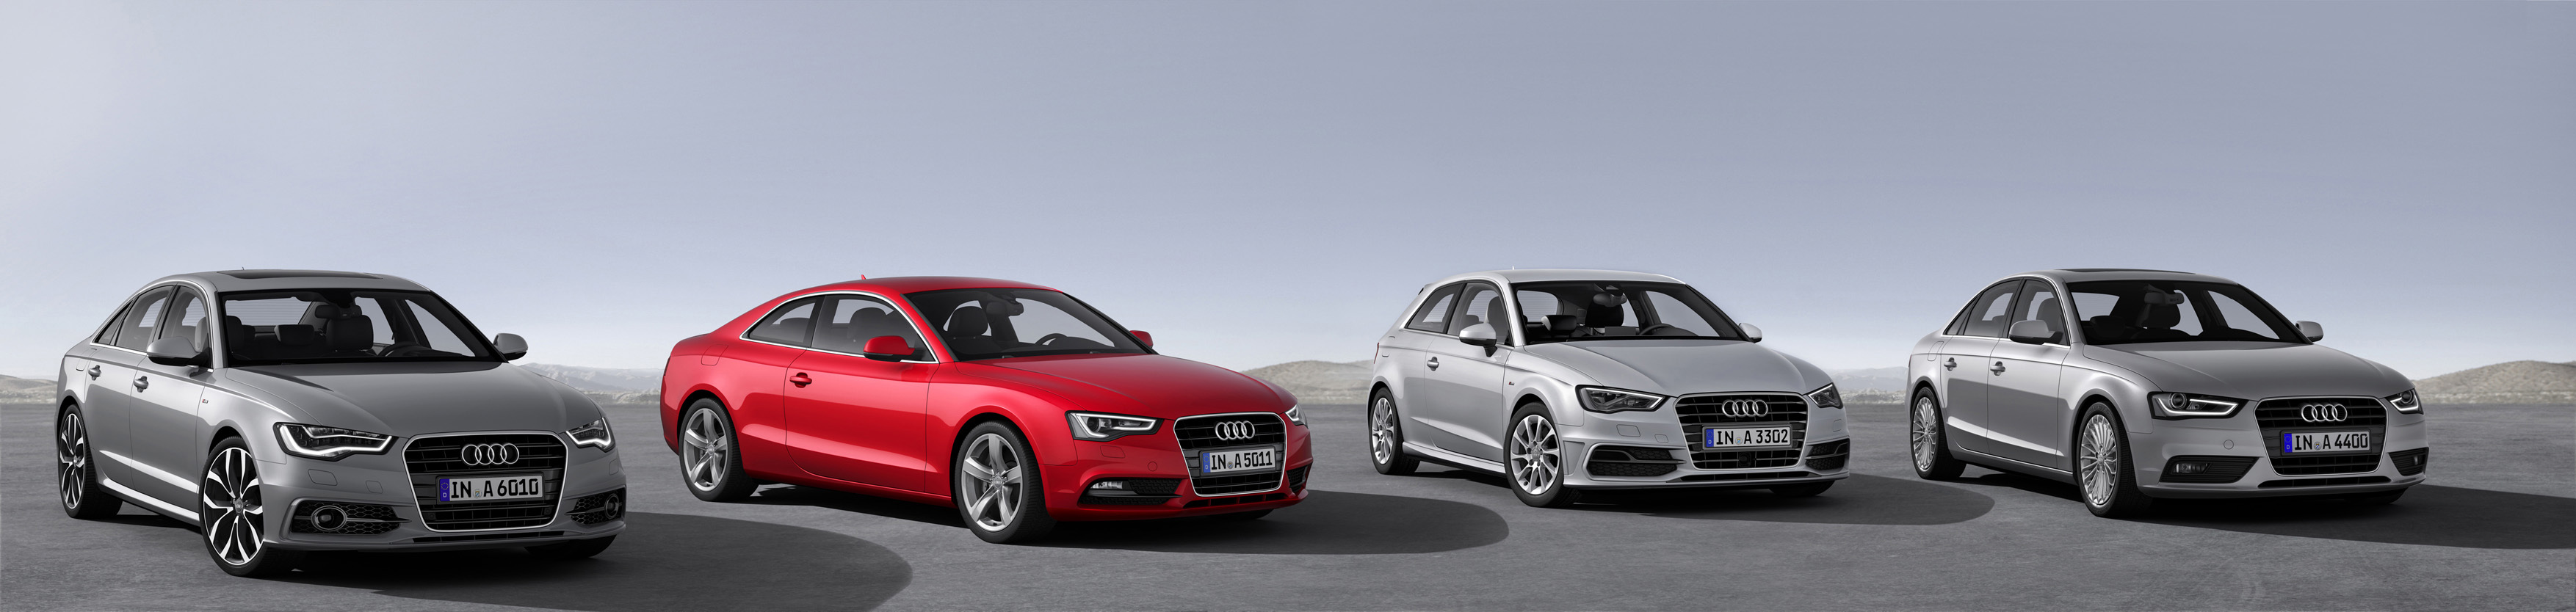 Фото новых моделей ultra от Audi: А4, А5 и А6